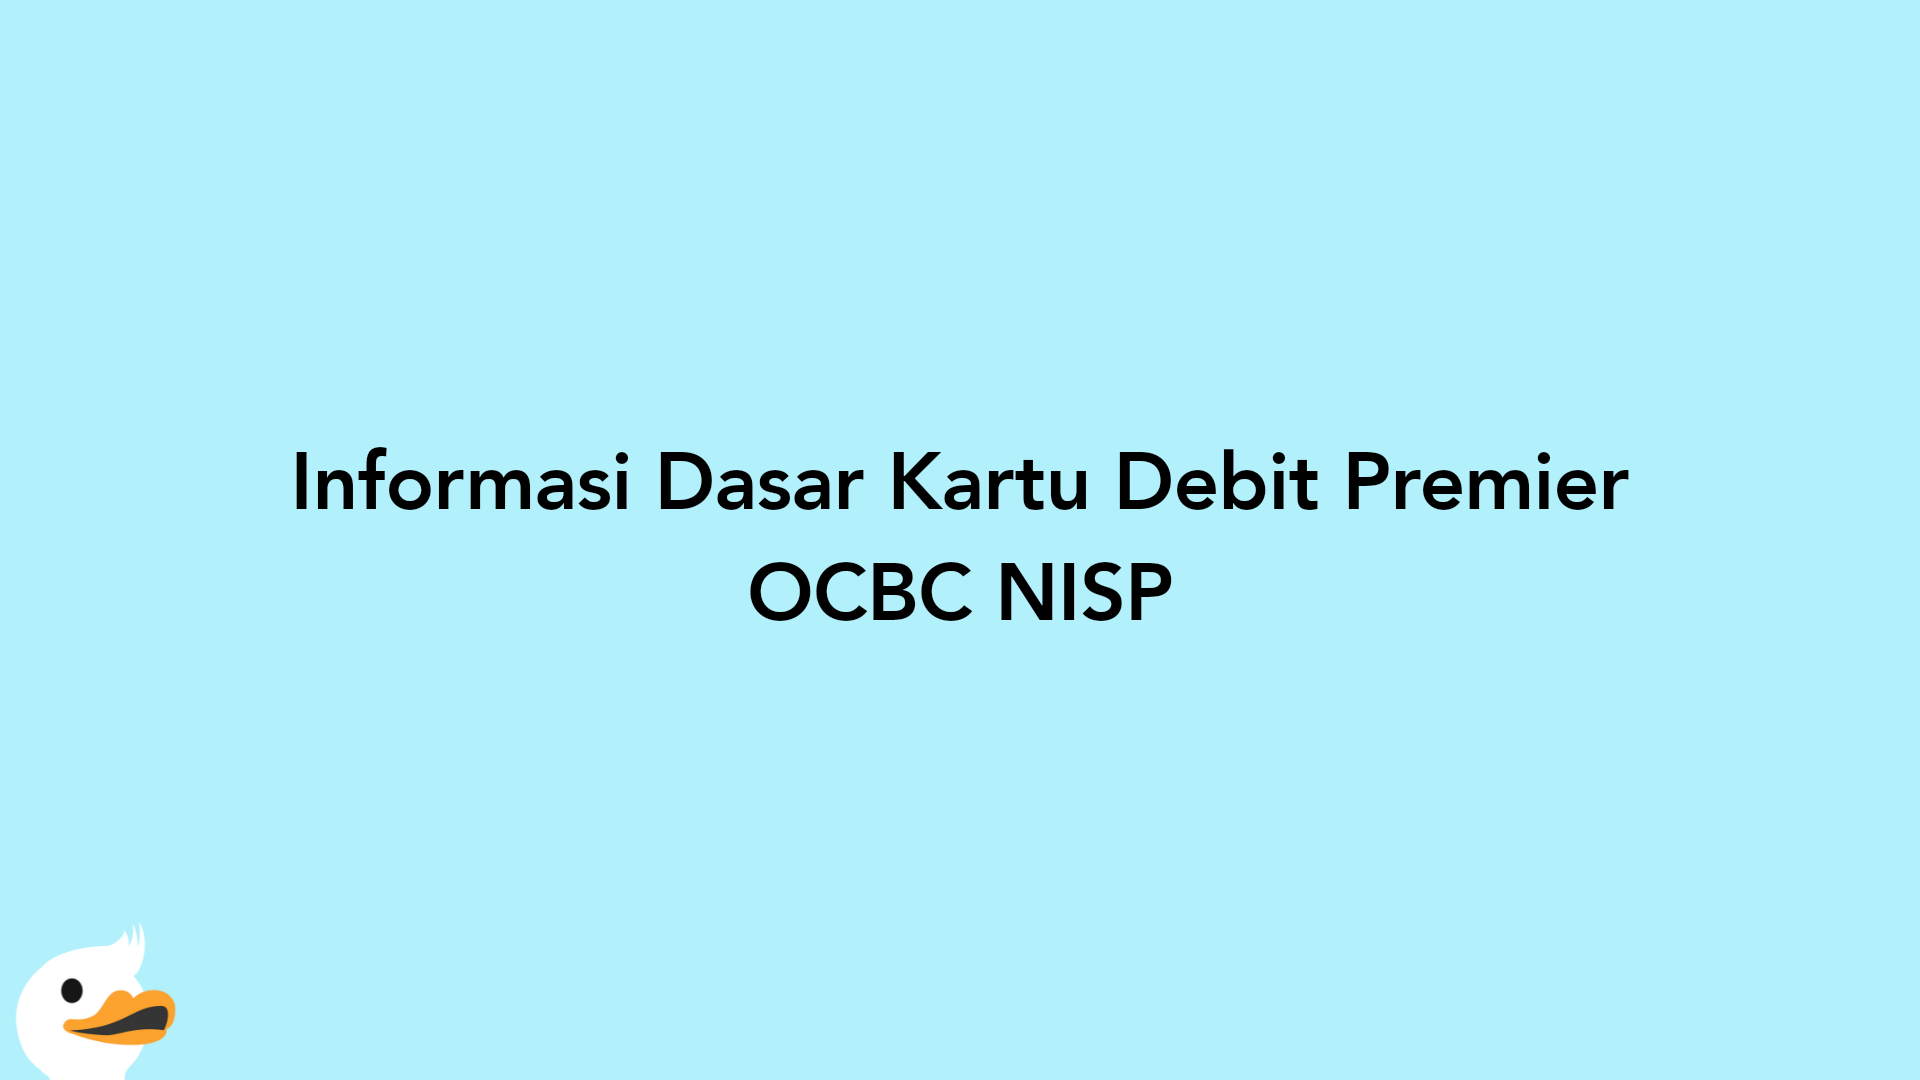 Informasi Dasar Kartu Debit Premier OCBC NISP